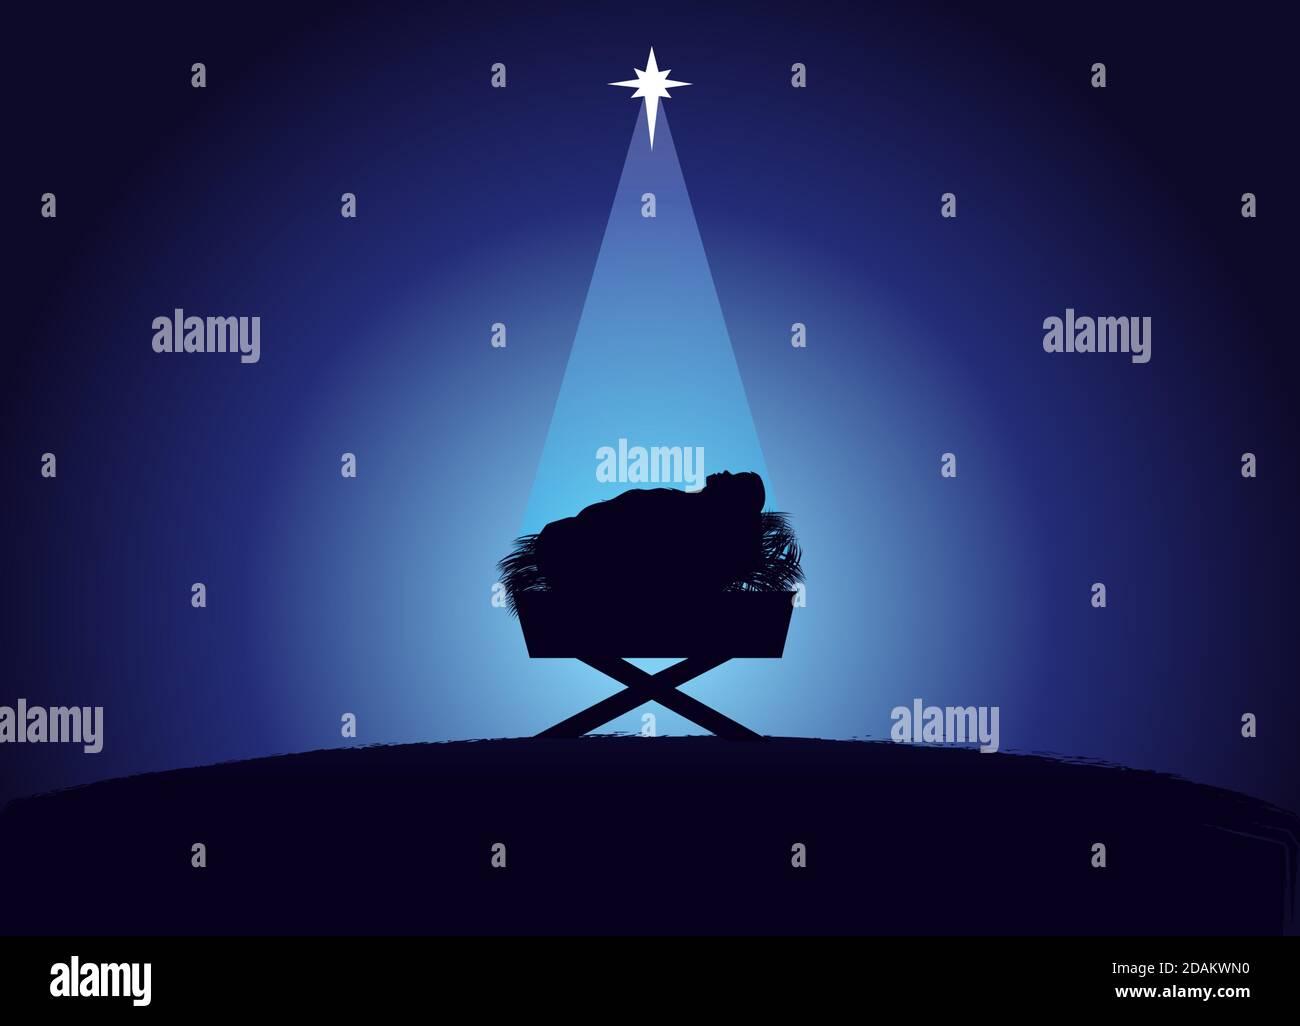 Scène de Noël de bébé Jésus dans la mangeoire en silhouette, entouré par la lumière de l'étoile. Carte de voeux de la Nativité chrétienne avec illustration de la naissance de CH Illustration de Vecteur